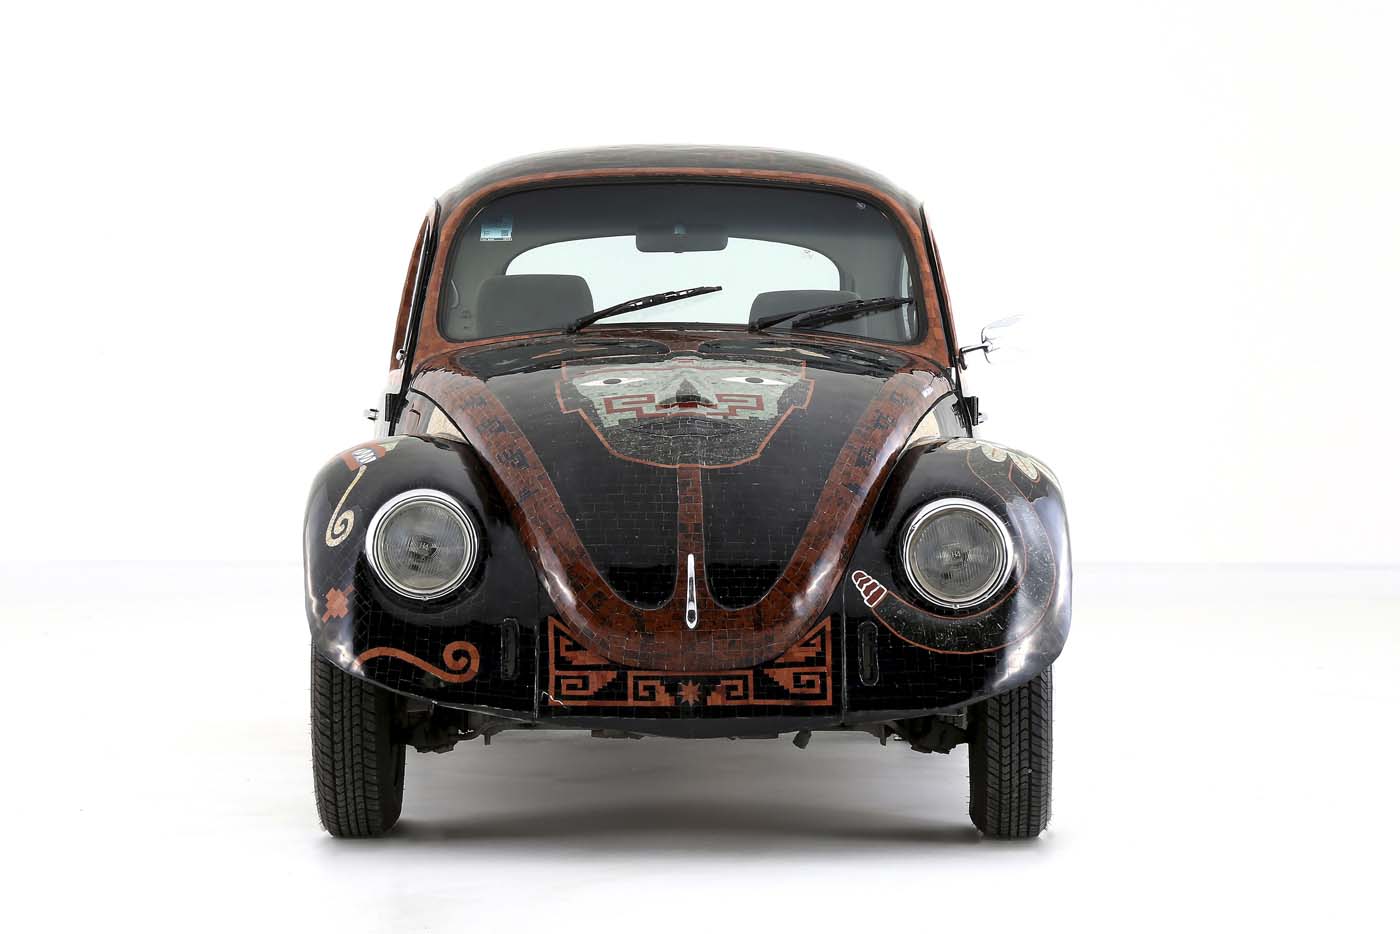 Presentan un escarabajo Volkswagen con piedras semipreciosas (fotos)